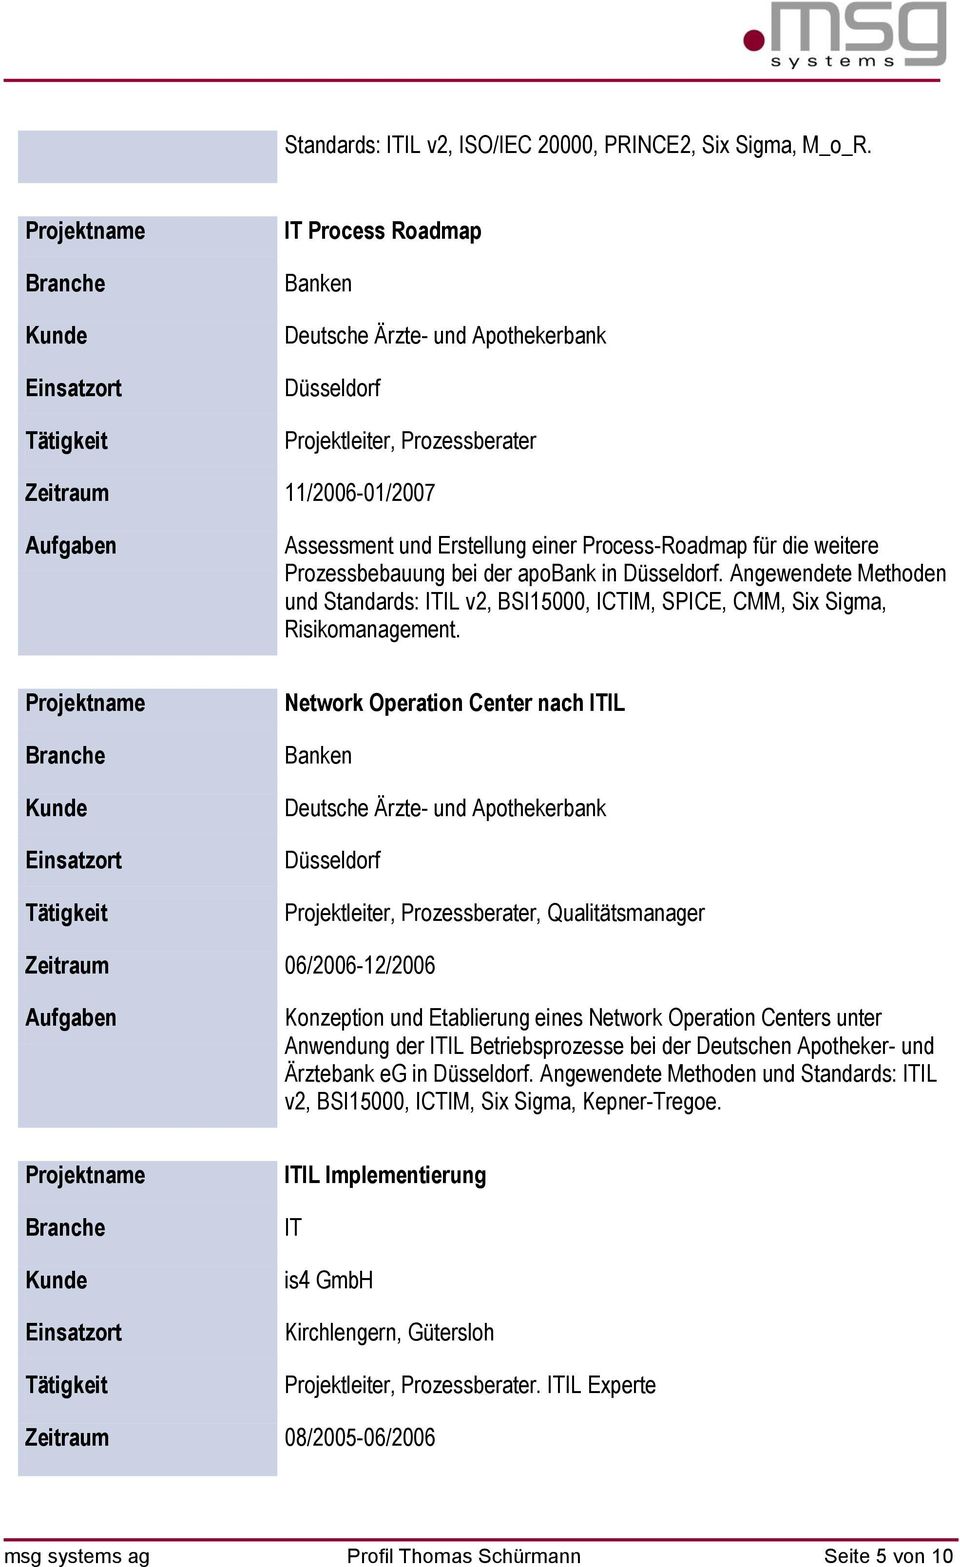 Prozessbebauung bei der apobank in Düsseldorf. Angewendete Methoden und Standards: IL v2, BSI15000, ICTIM, SPICE, CMM, Six Sigma, Risikomanagement.